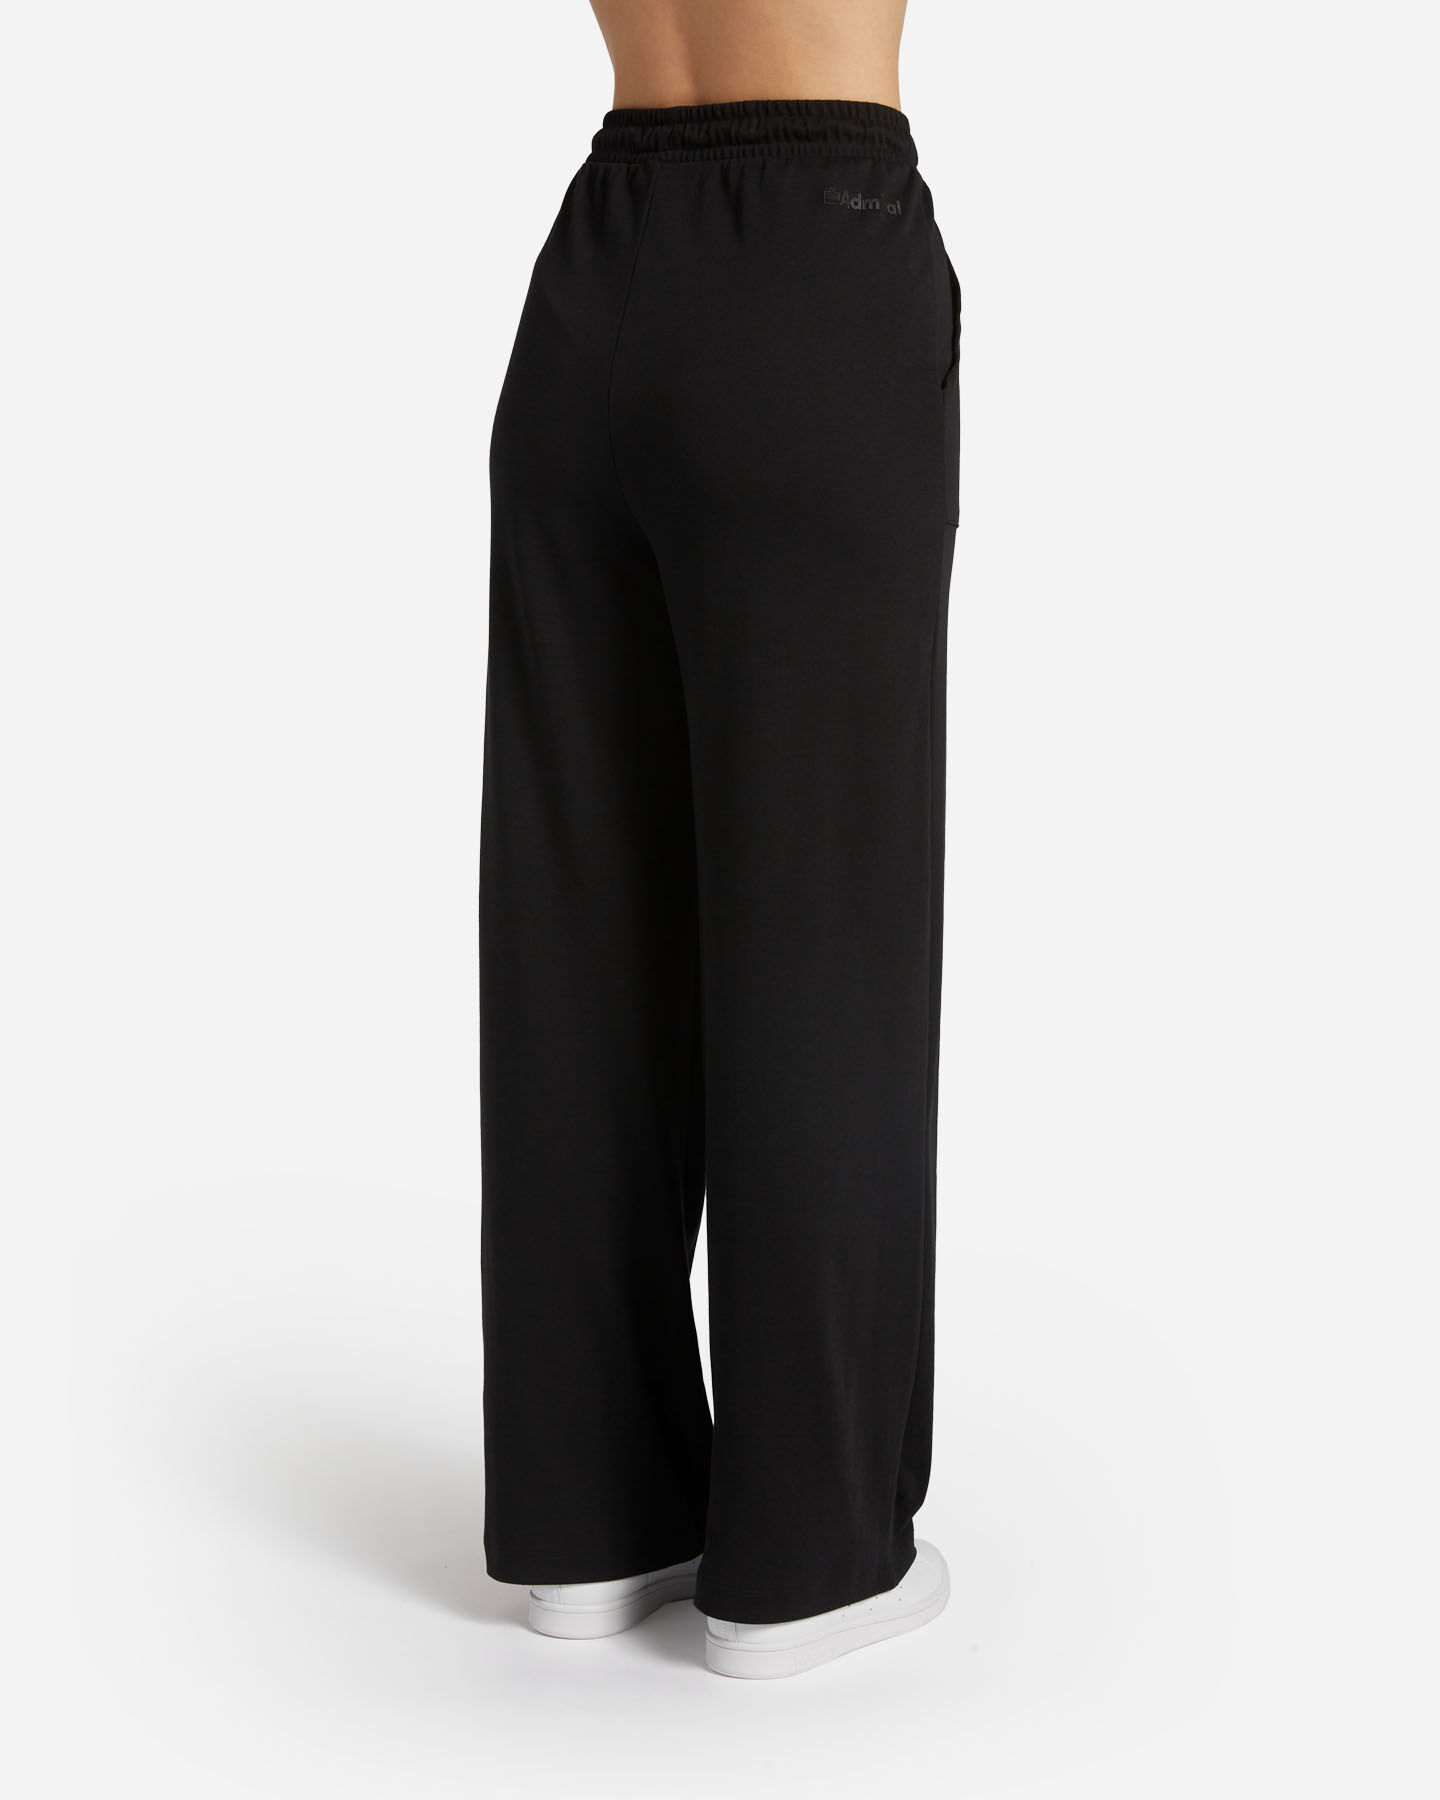  Pantalone ADMIRAL CLASSIC W S4129415|050|M scatto 1